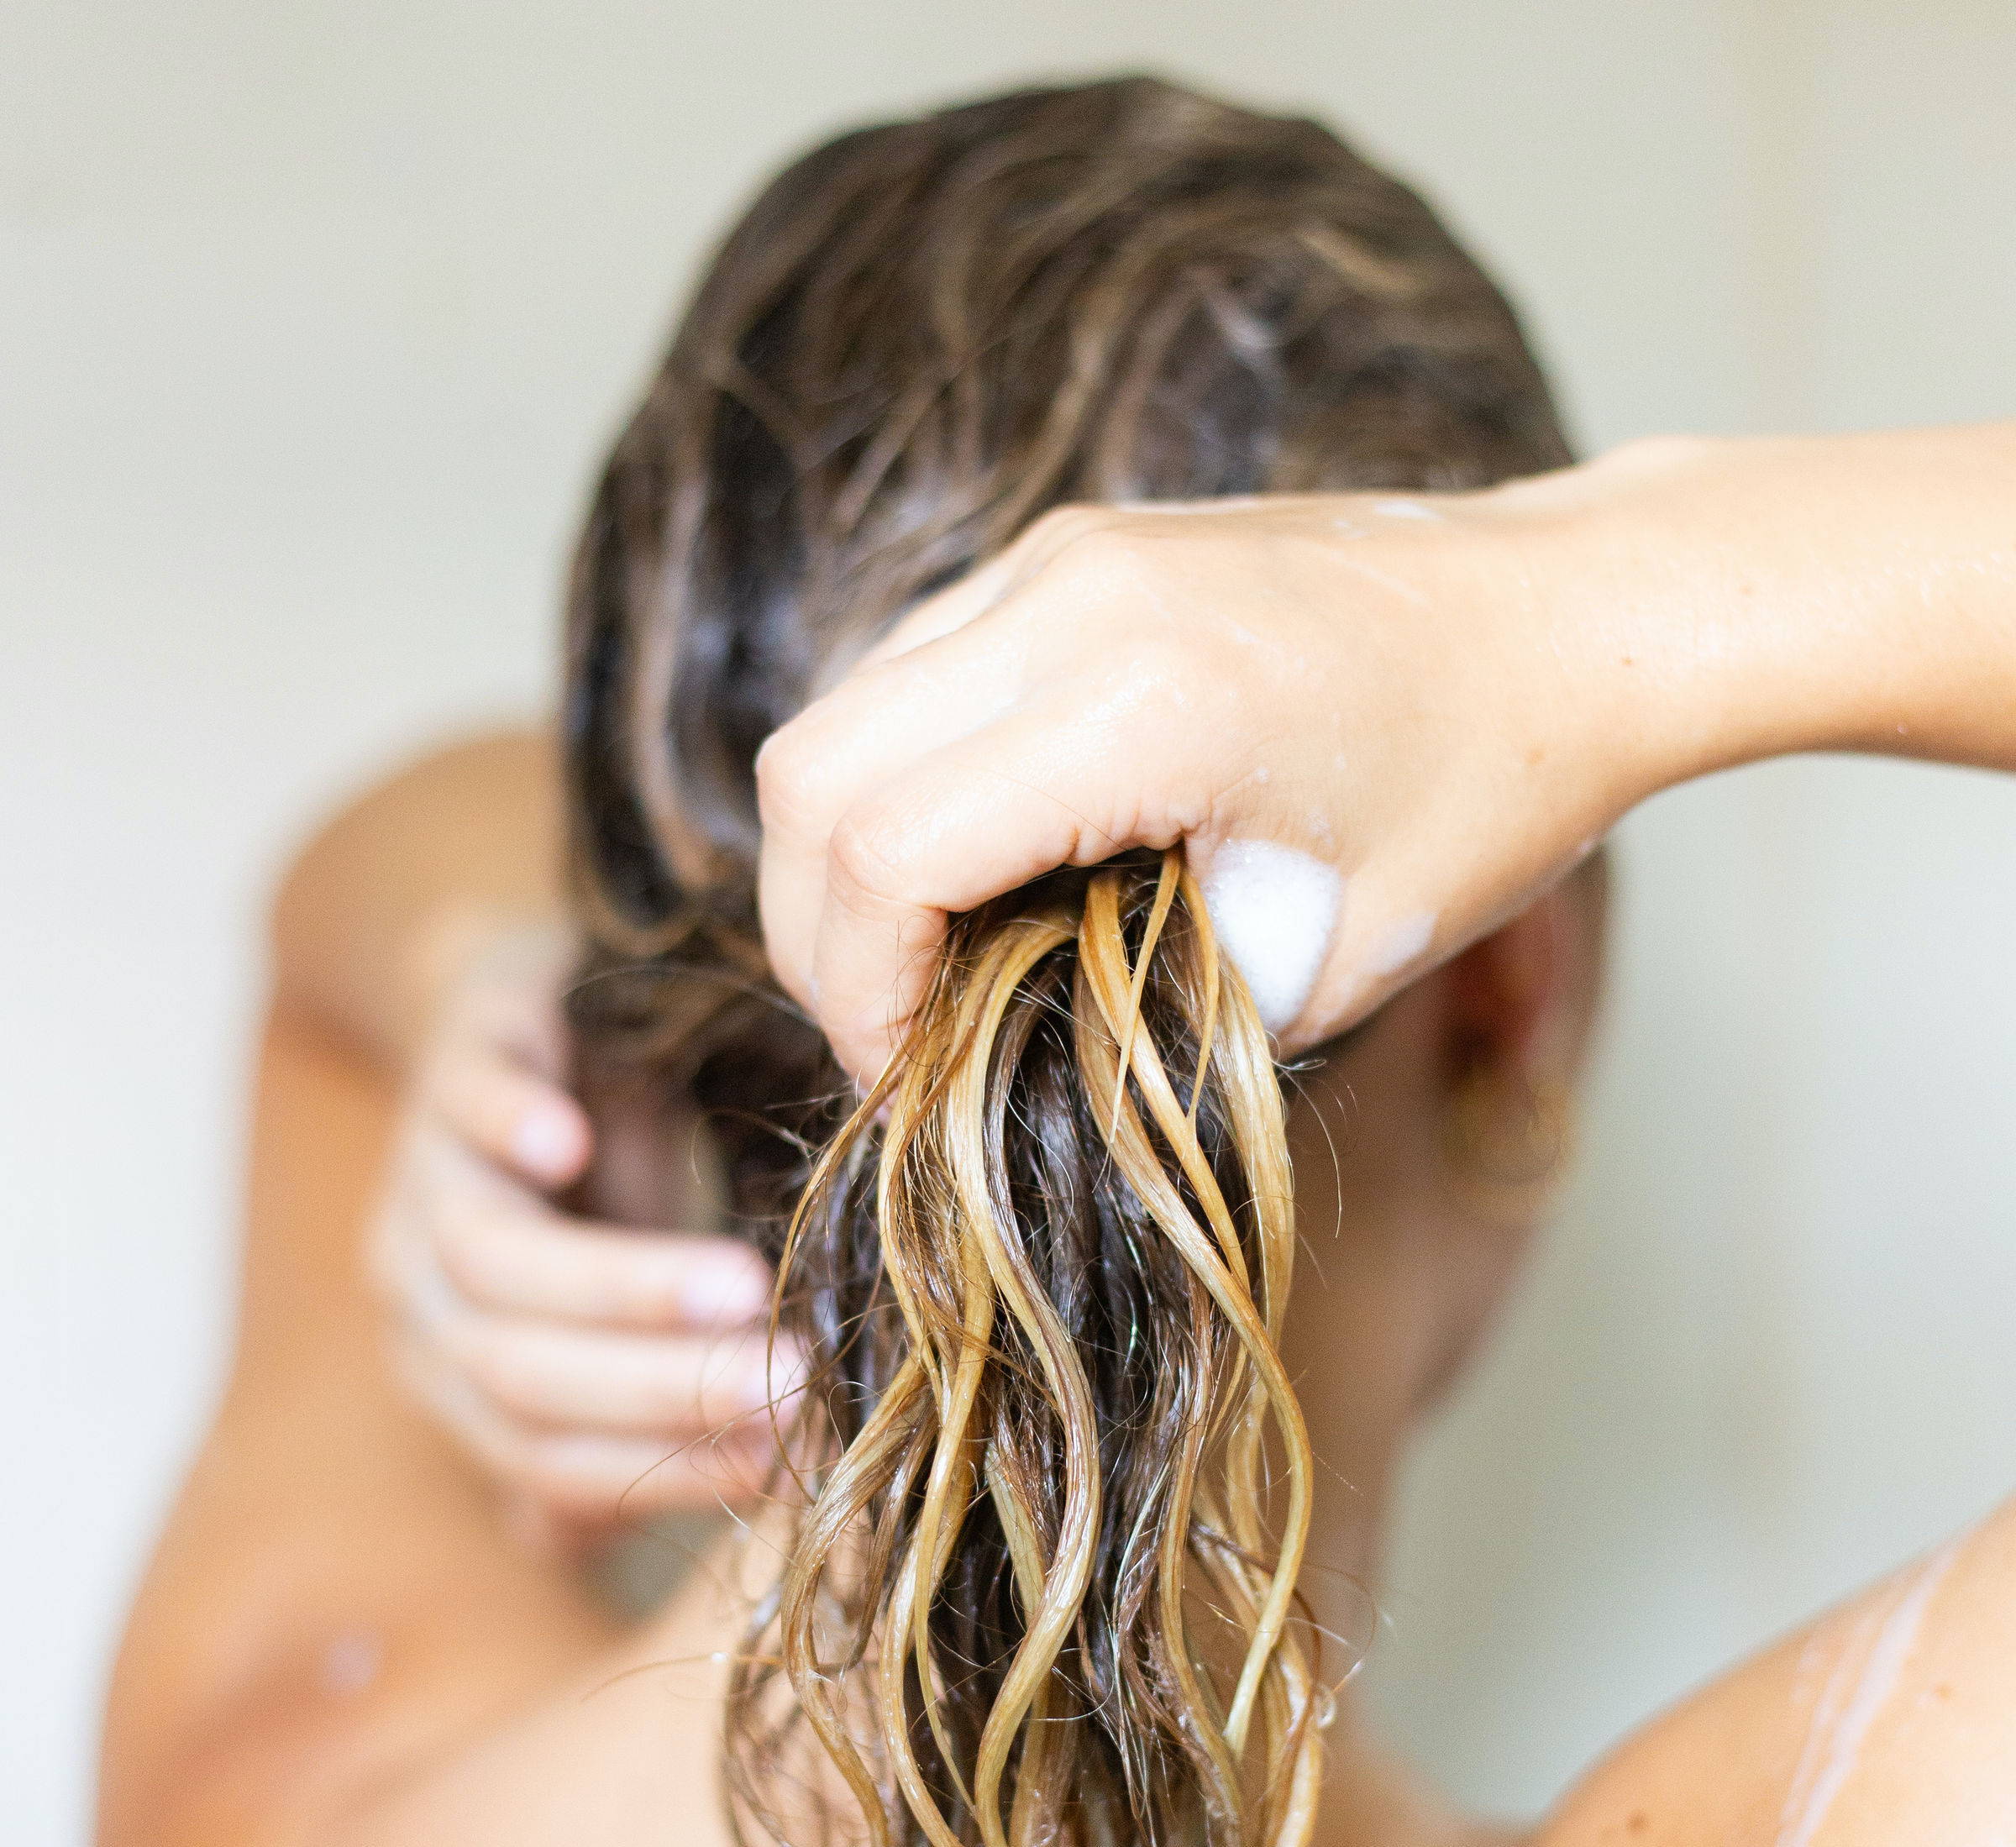 Davines washing hair in shower